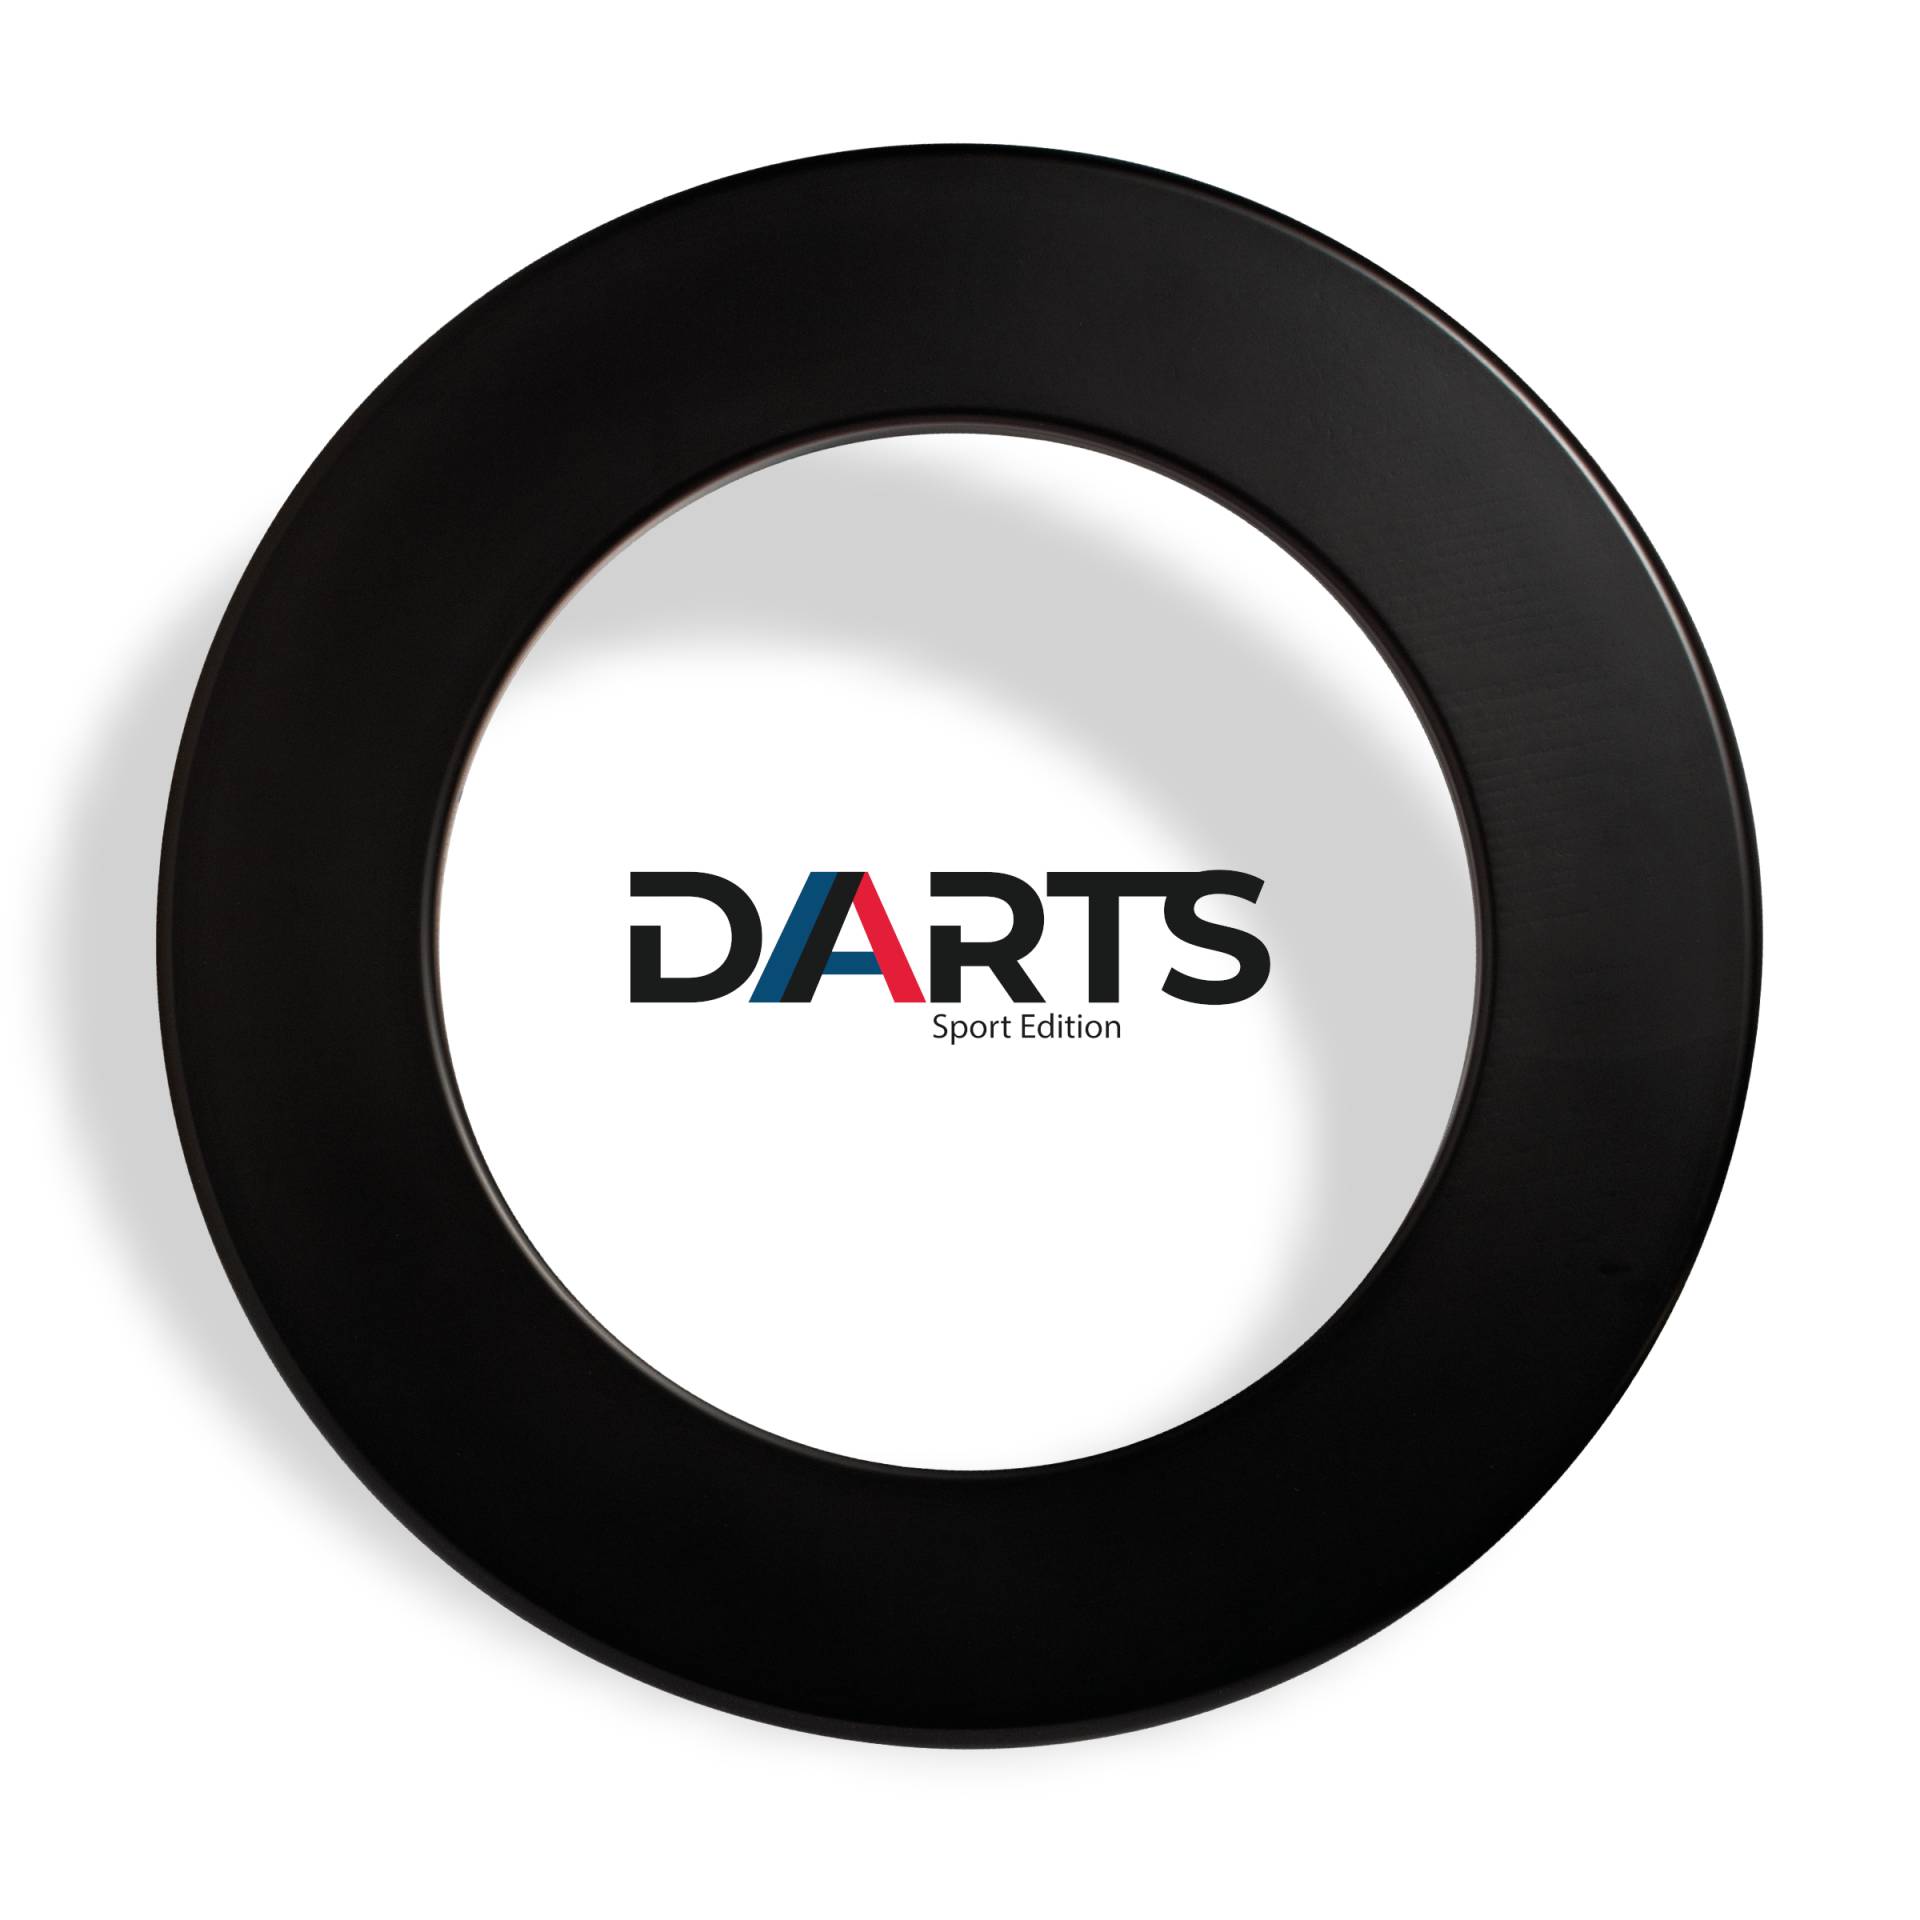 Dartboard Surround schwarz - DARTS Sport Edition von DARTS Sport Edition